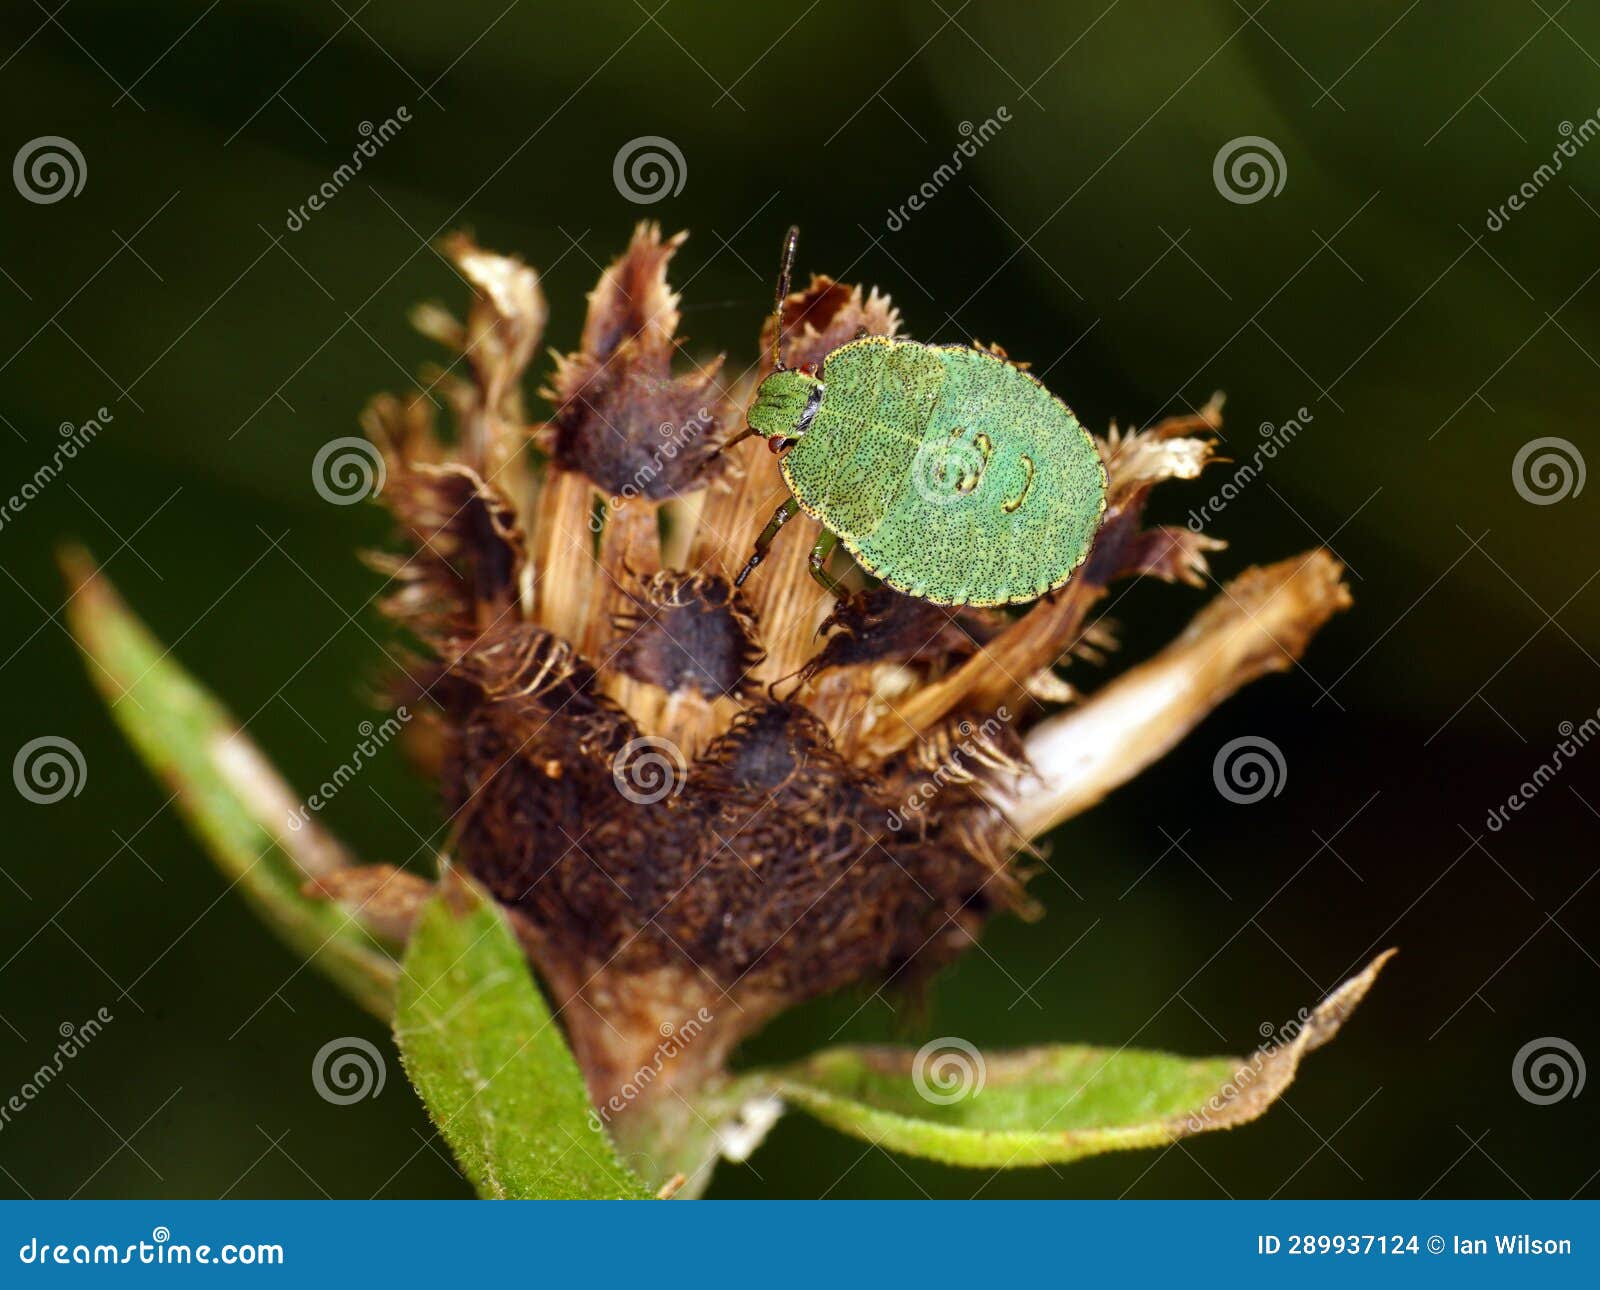 hawthorn shieldbug 4th fourth instar top view